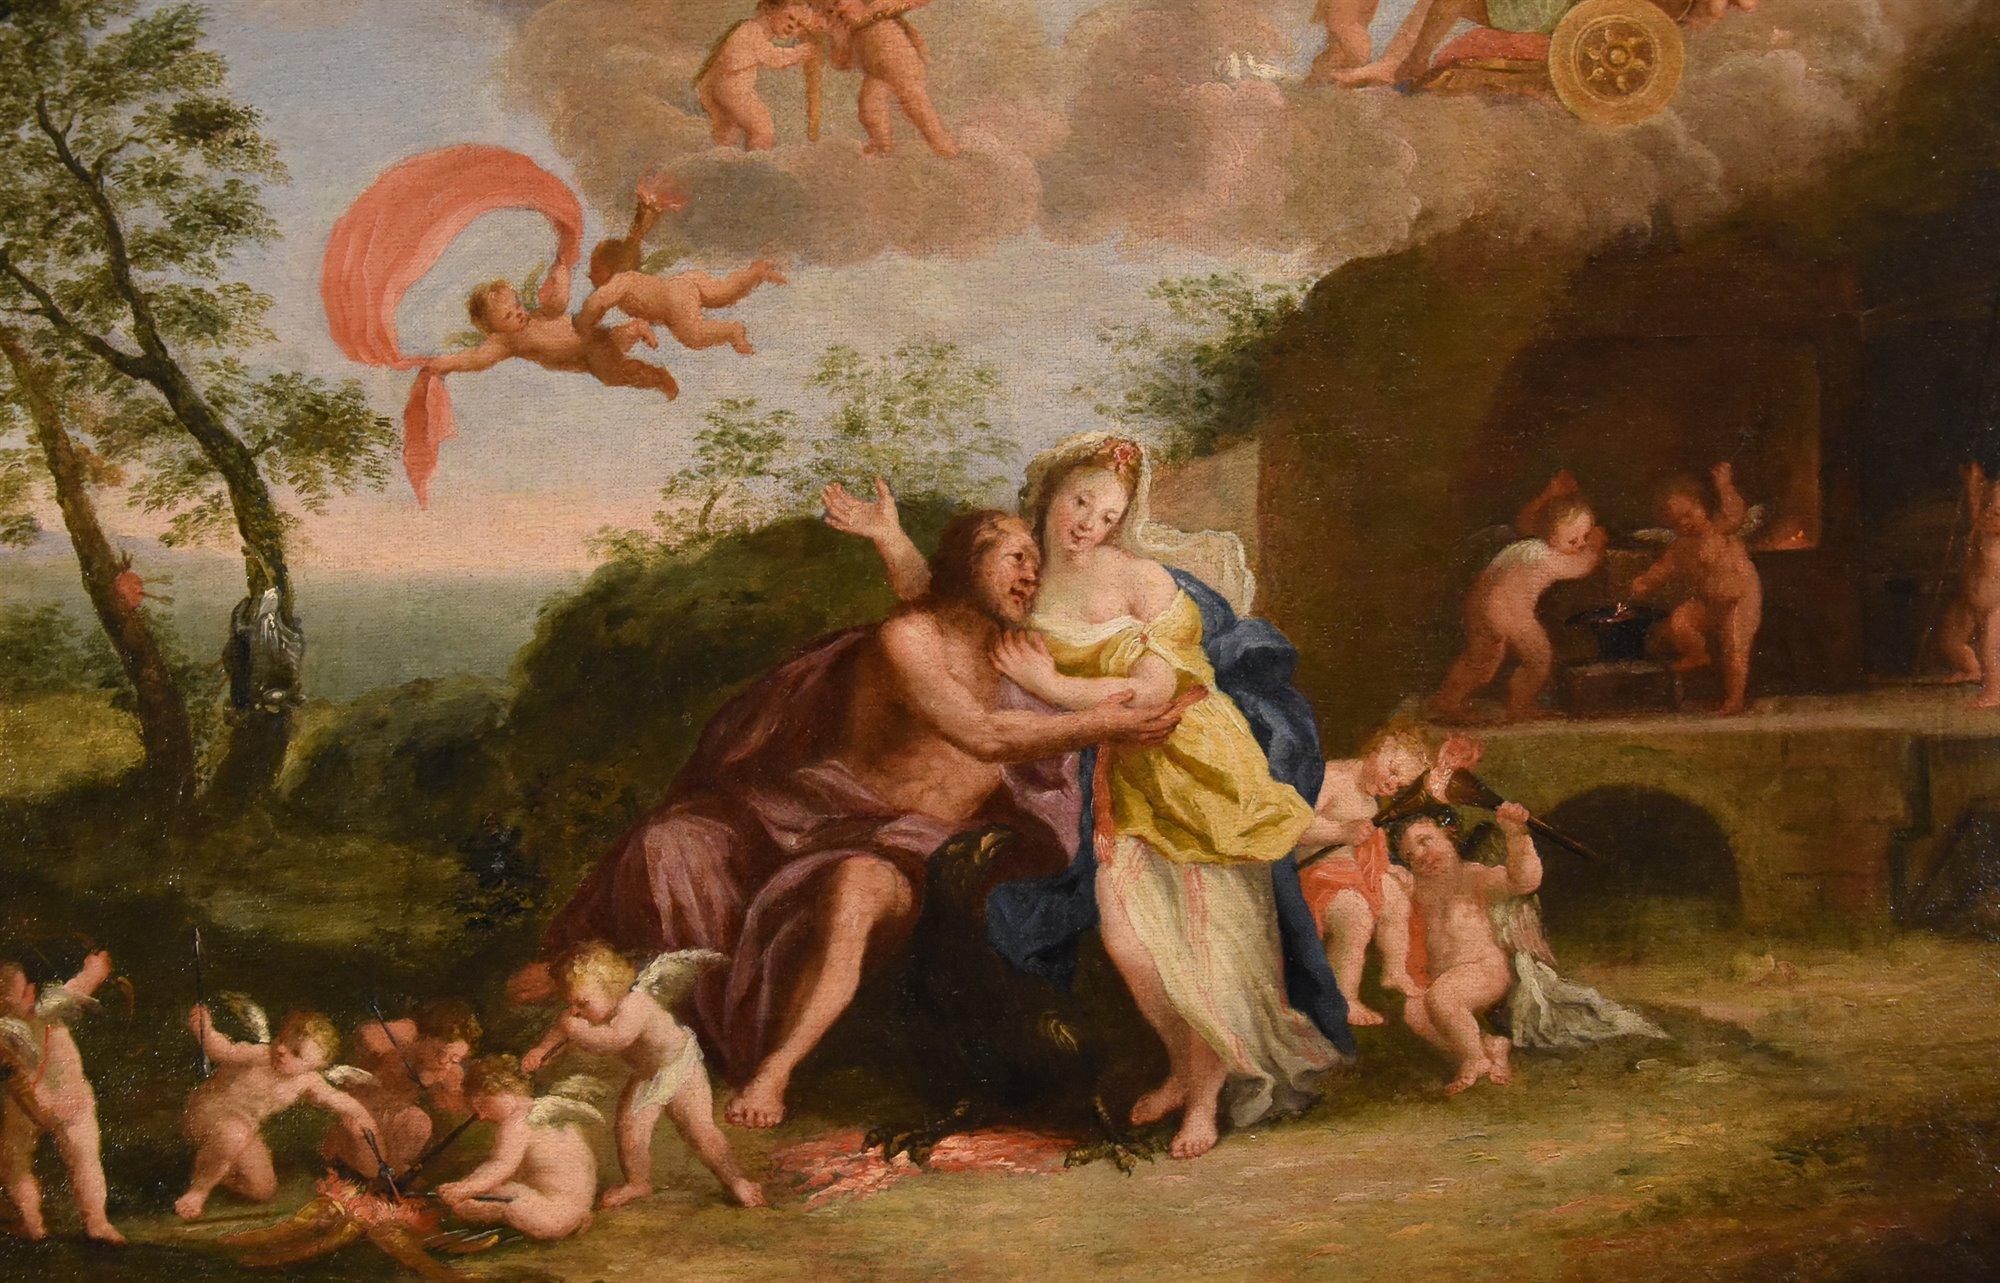 Mars Venus Albani Paint Oil on canvas 17th Century Old master Mythological For Sale 5